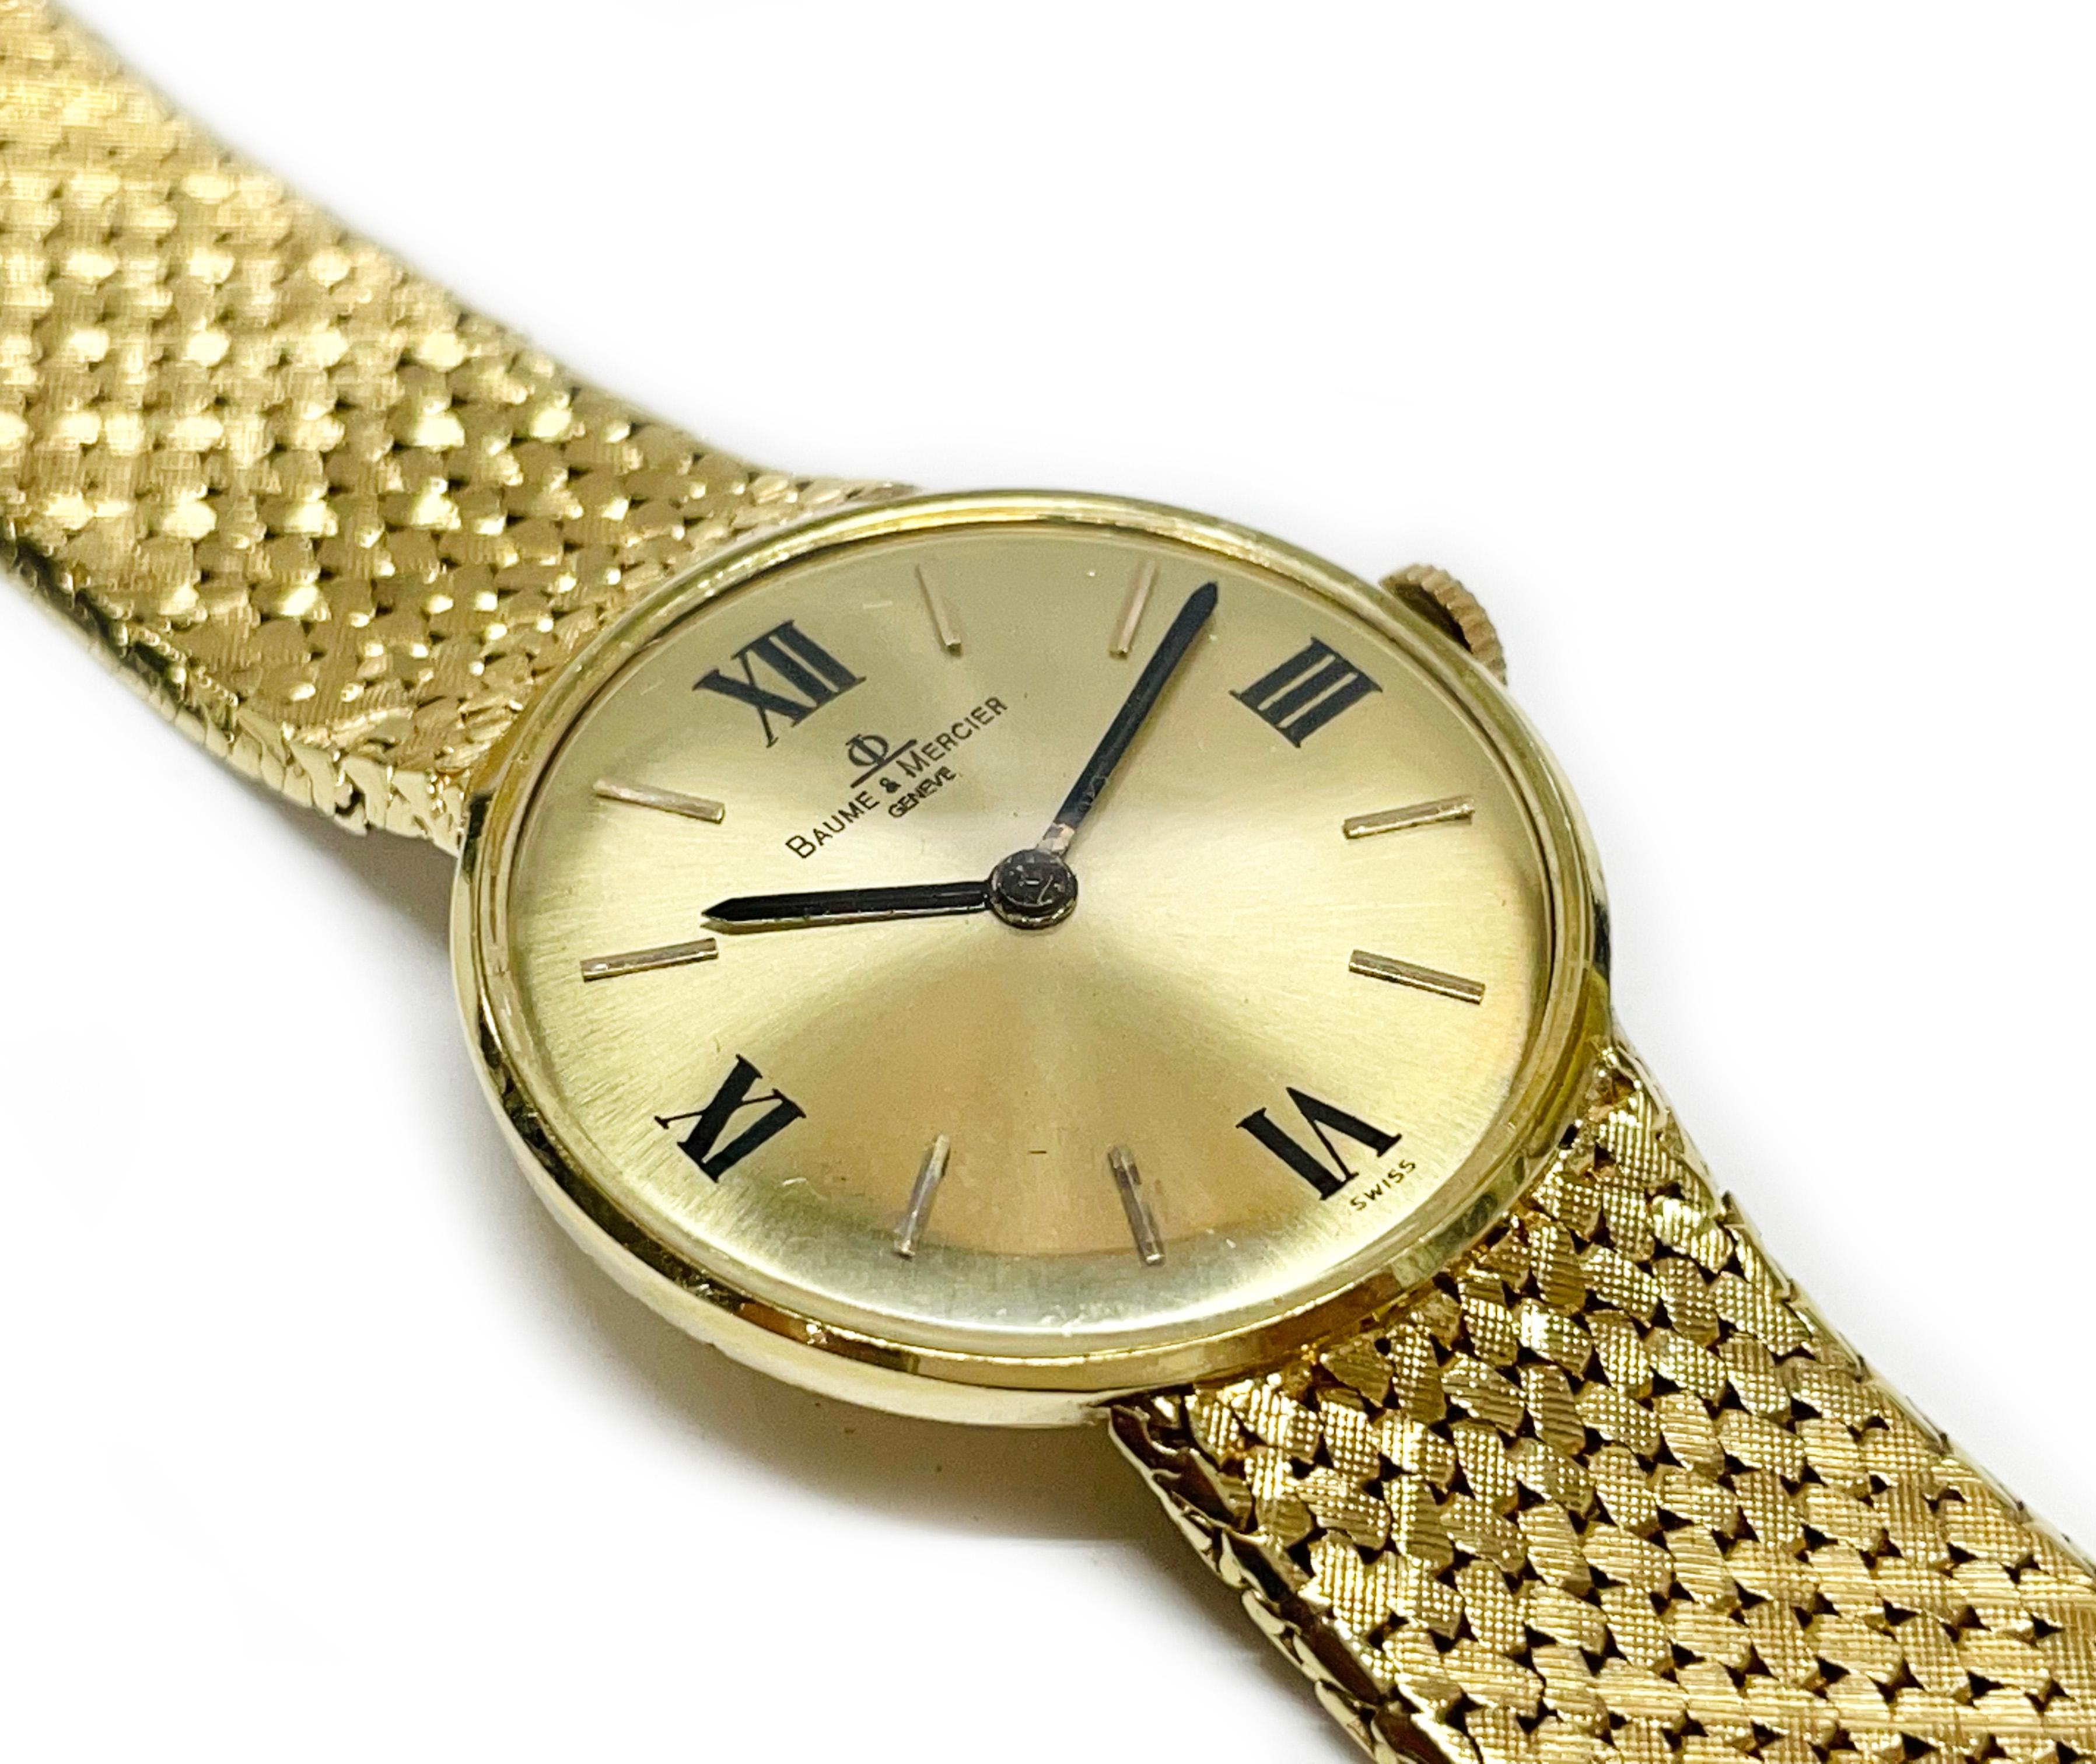 14 Karat Baume et Mercier Gelbgold-Armbanduhr. Die Uhr verfügt über ein rundes goldenes Zifferblatt, römische Zahlen bei zwölf, drei, sechs und neun. Die Uhr verfügt über Stunden- und Minutenzeiger im Stil eines Stabes. Das Armband ist aus Mesh mit